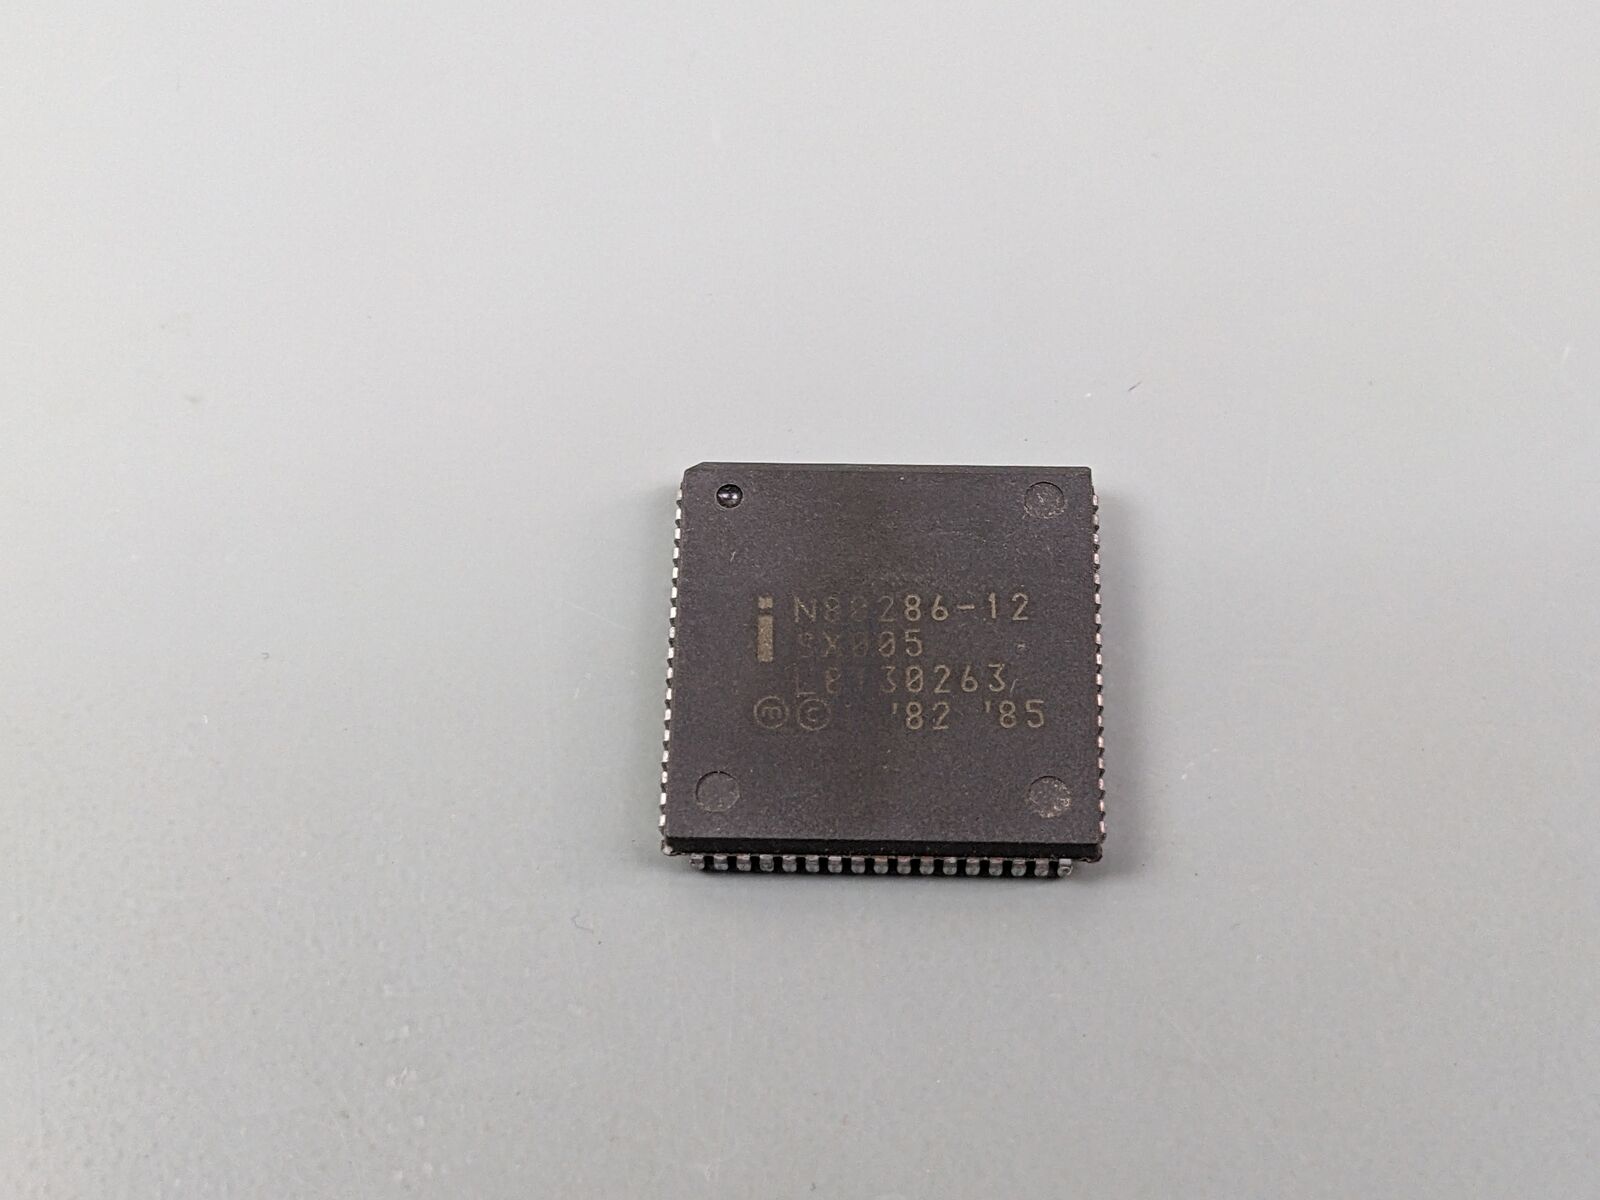 Intel N80286-12 SX005 Vintage 286 CPU in Nice PLCC Package x86 ~ US STOCK